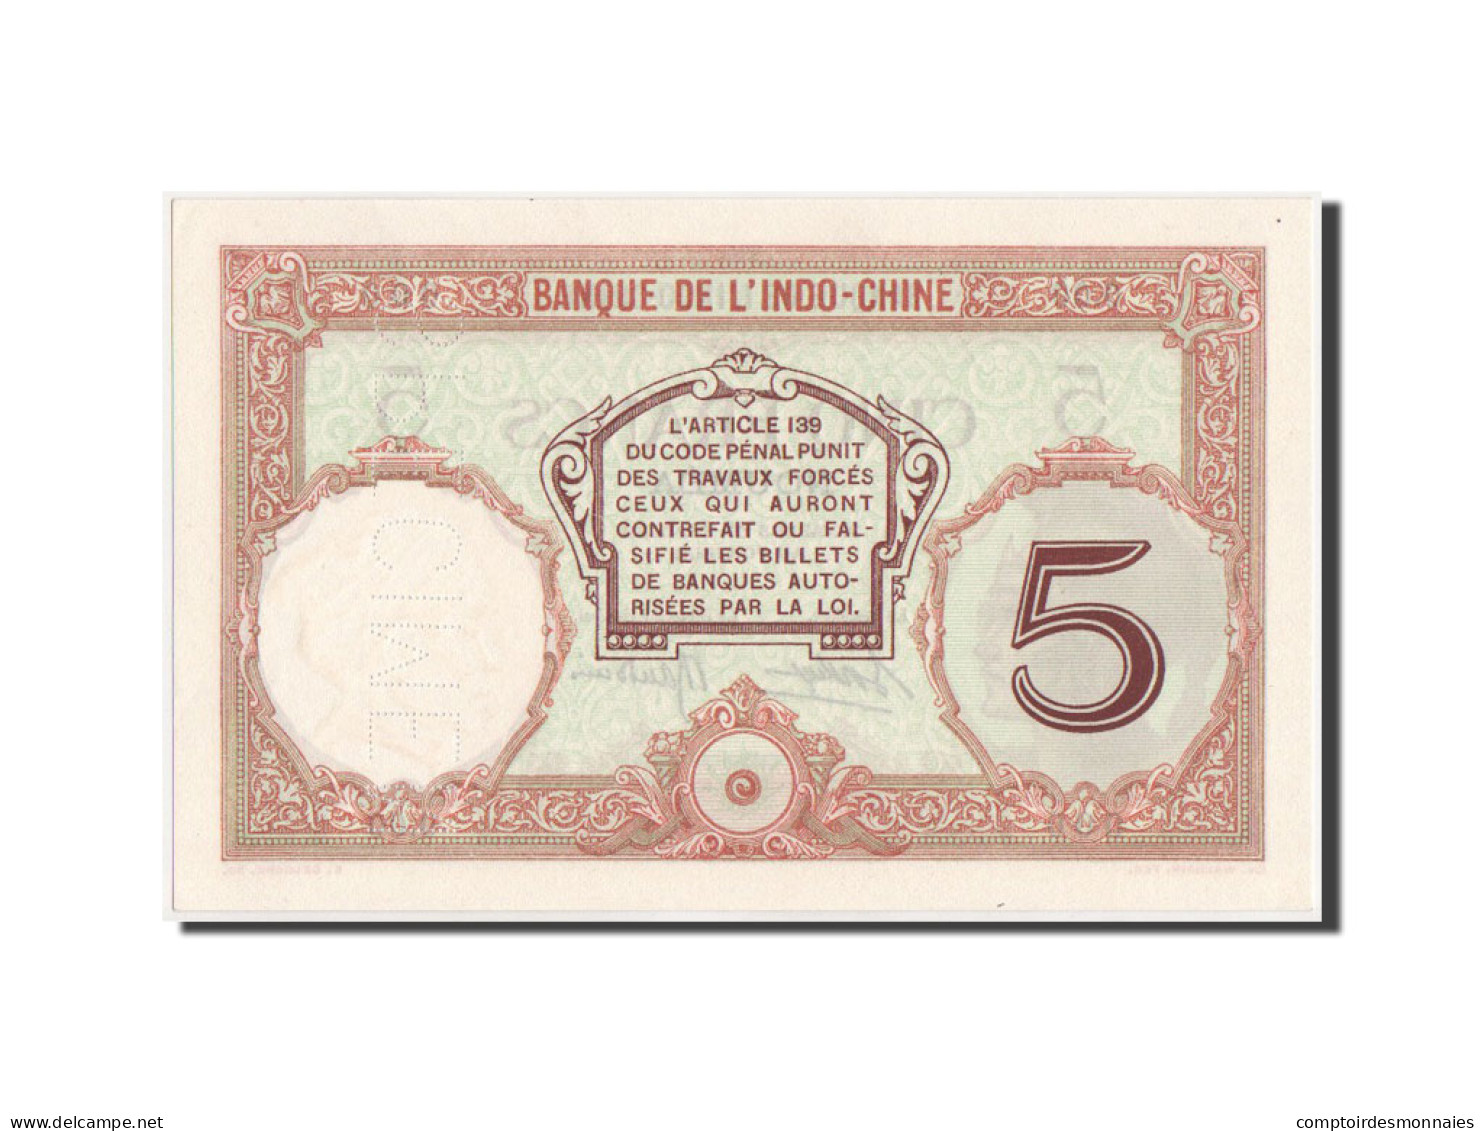 Billet, Nouvelle-Calédonie, 5 Francs, 1926, KM:36s, SPL+ - Nouméa (New Caledonia 1873-1985)